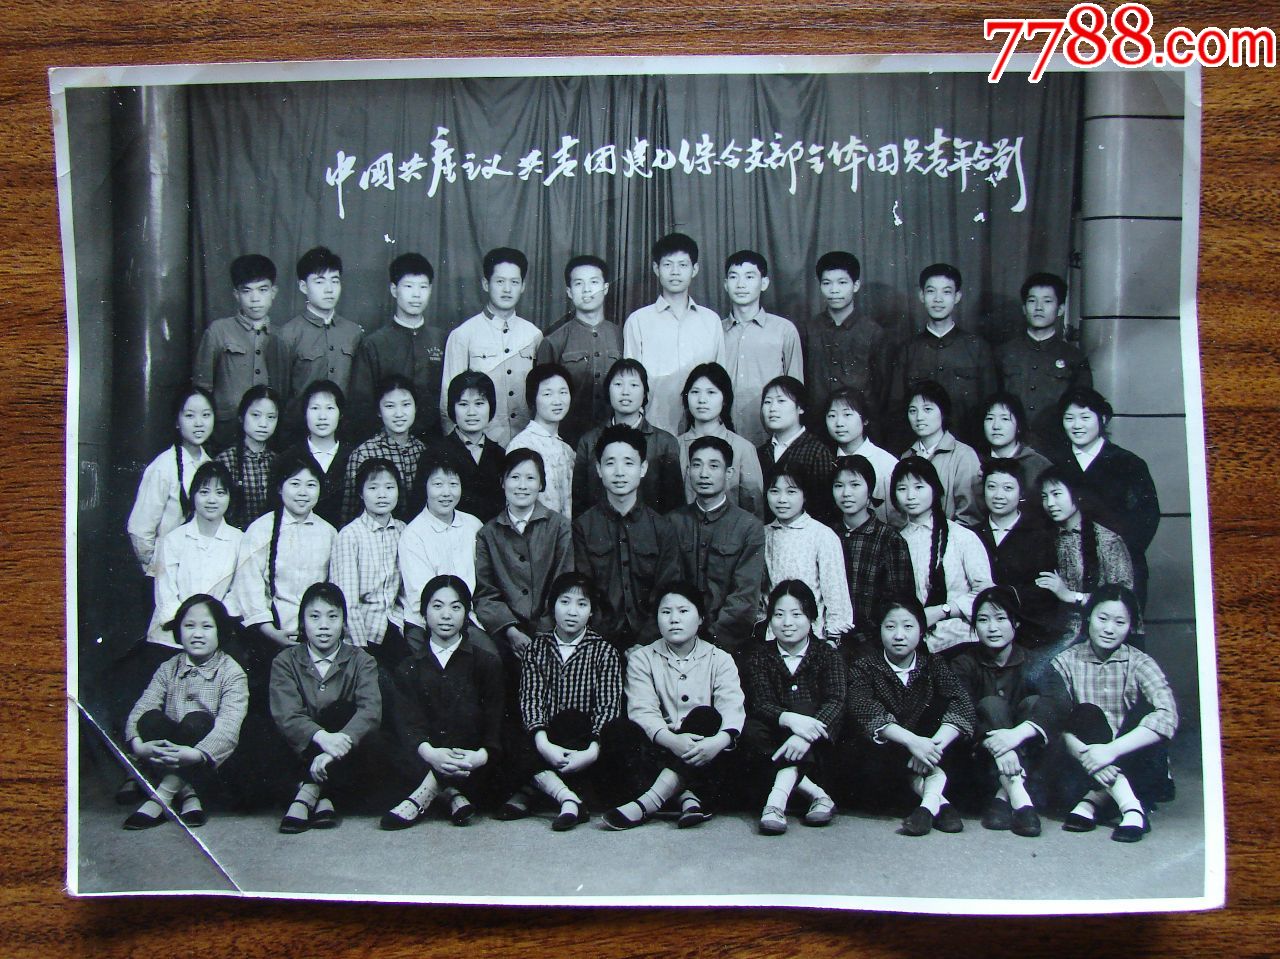 中国共产主义共青团建七综合支部全体团员青年合影(73年),老照片